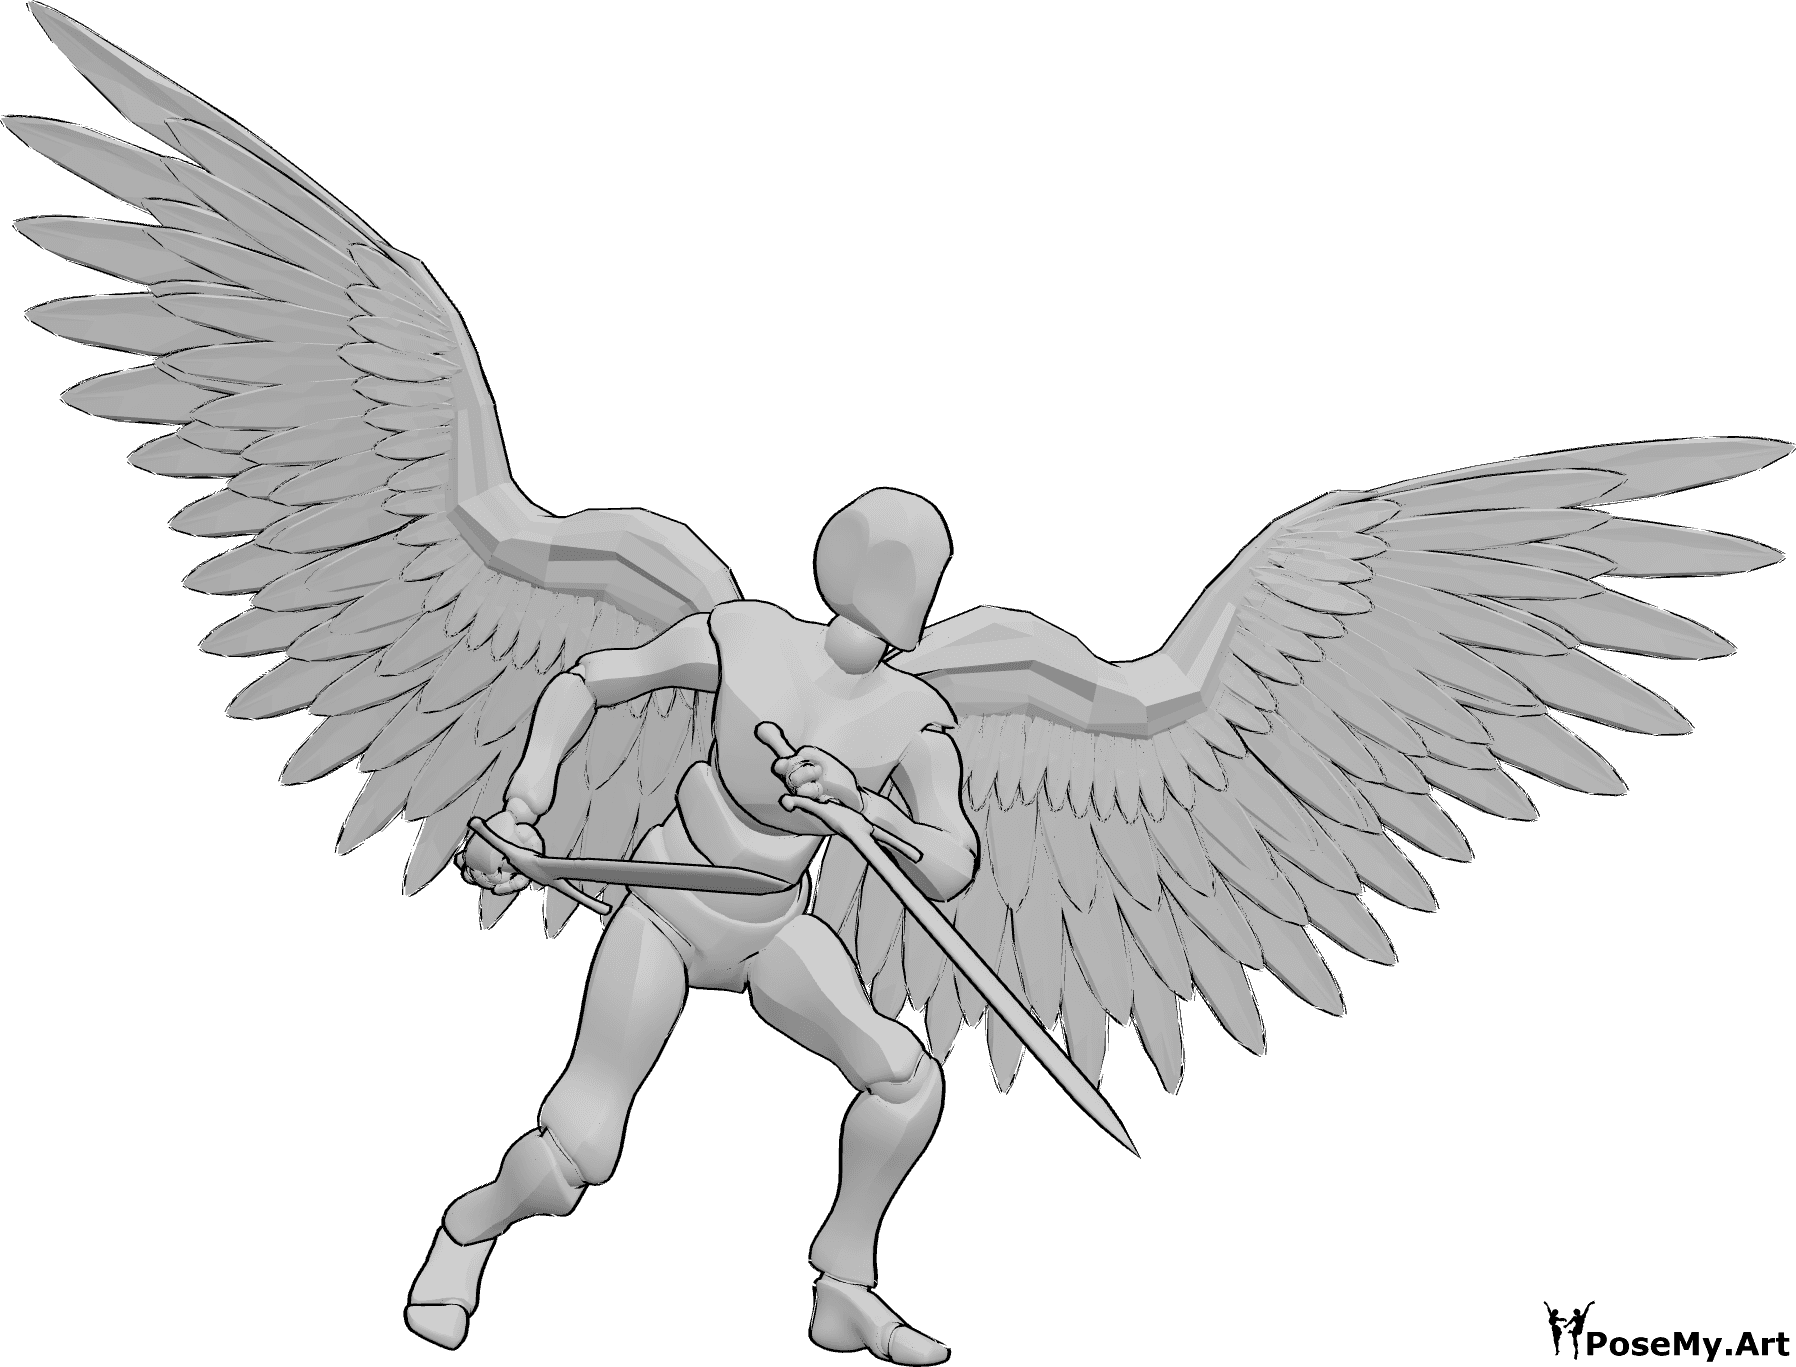 Référence des poses- Ange masculin posant des épées - L'ange masculin est debout et tient deux grandes épées, prêt à se battre.